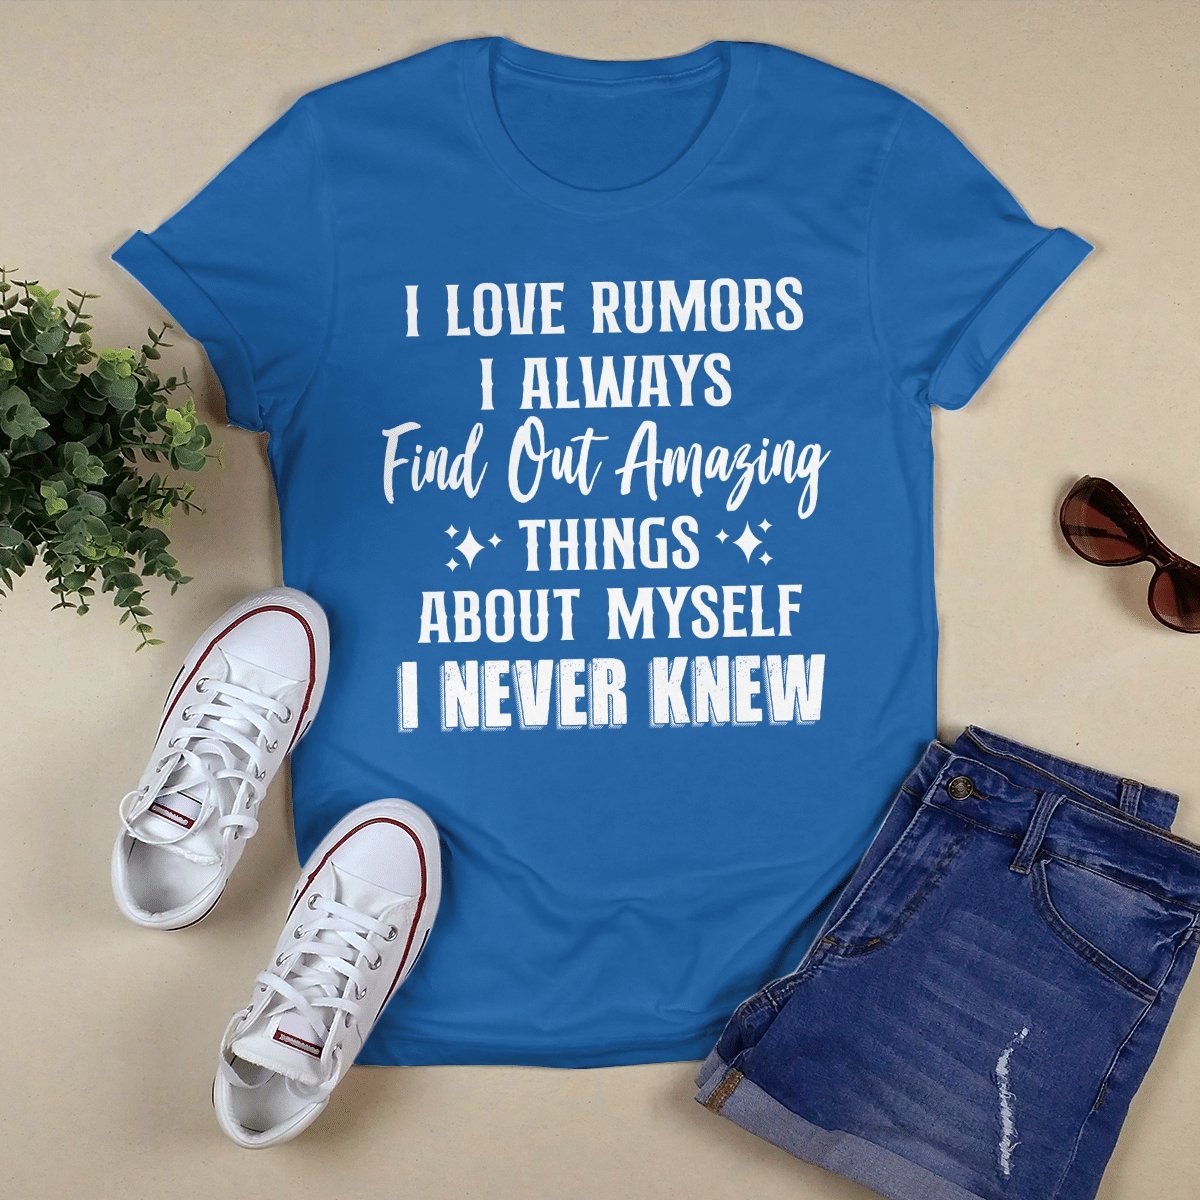 I Love Rumors shirt